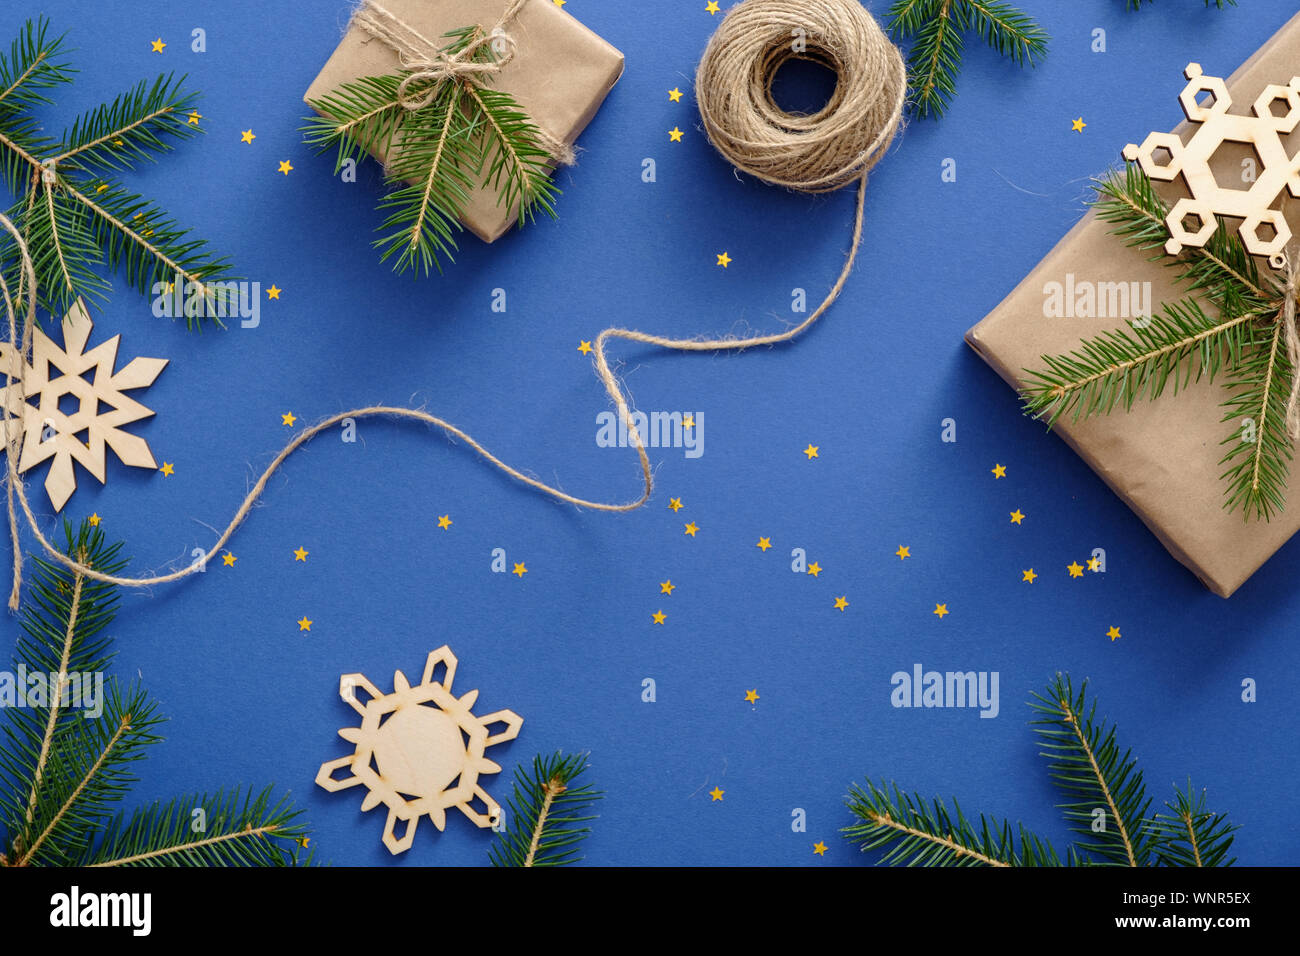 Decorazioni di Natale, in legno realizzati a mano i fiocchi di neve, Xmas regali avvolti in carta kraft, Abete rami, coriandoli su sfondo blu. Natale, inverno Foto Stock